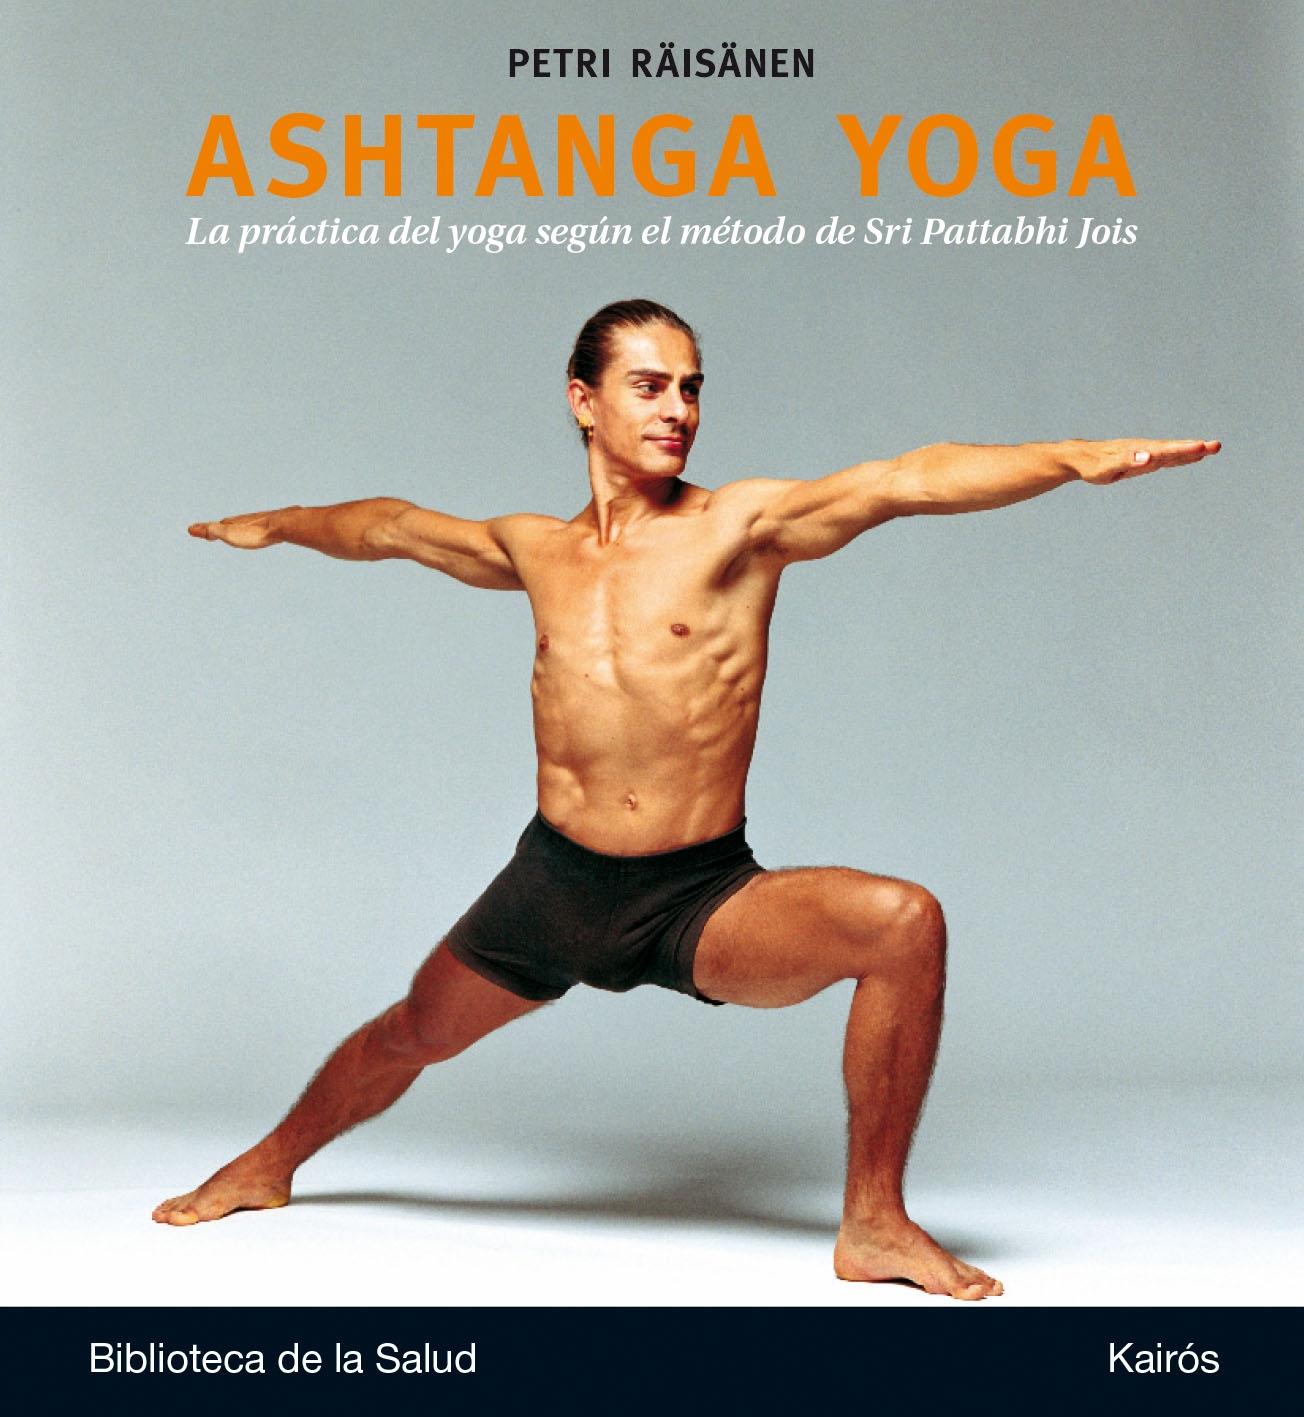 Ashtanga Yoga "La práctica del yoga según el método de Sri Patta"